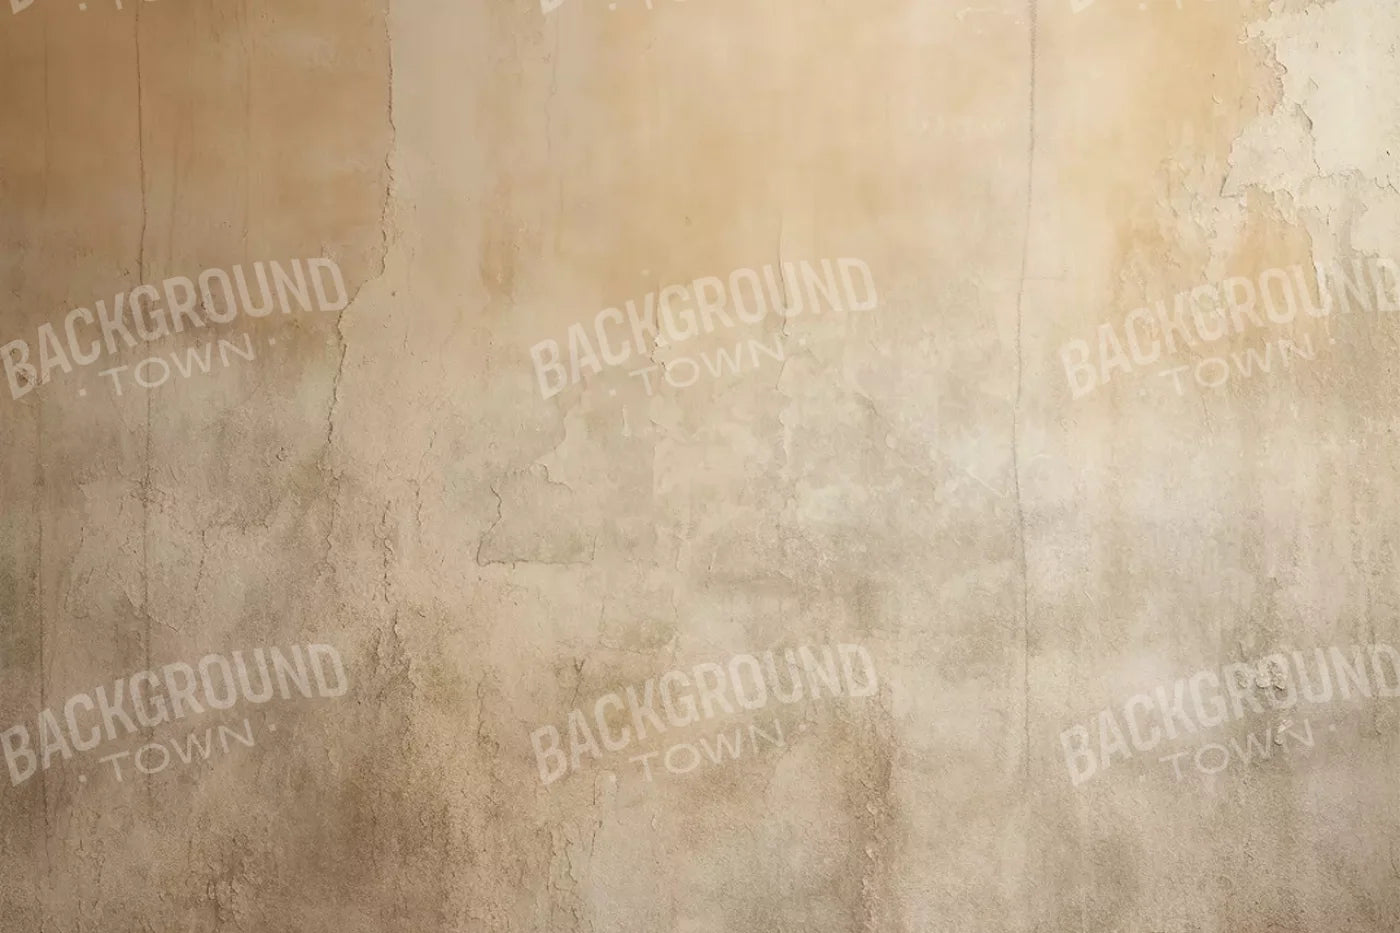 Plaster Wall Cream Iii 12’X8’ Ultracloth (144 X 96 Inch) Backdrop